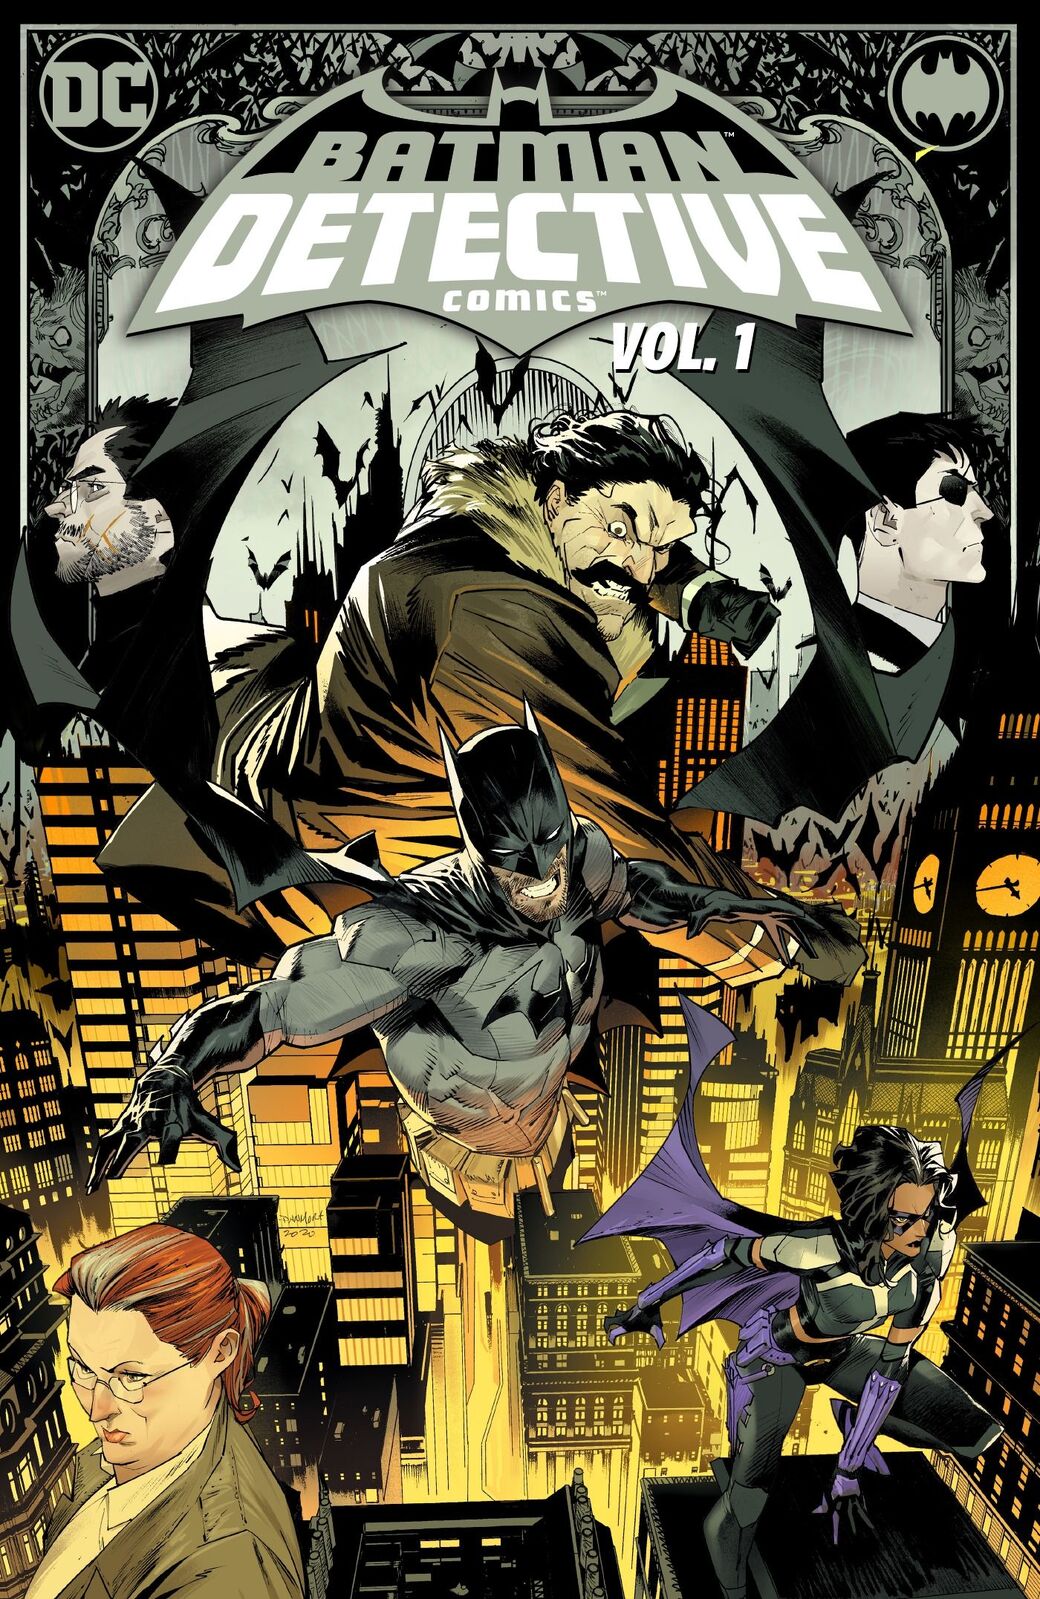 Batman Detective Comics Vol. 1 The Neighborhood - DC COMICS